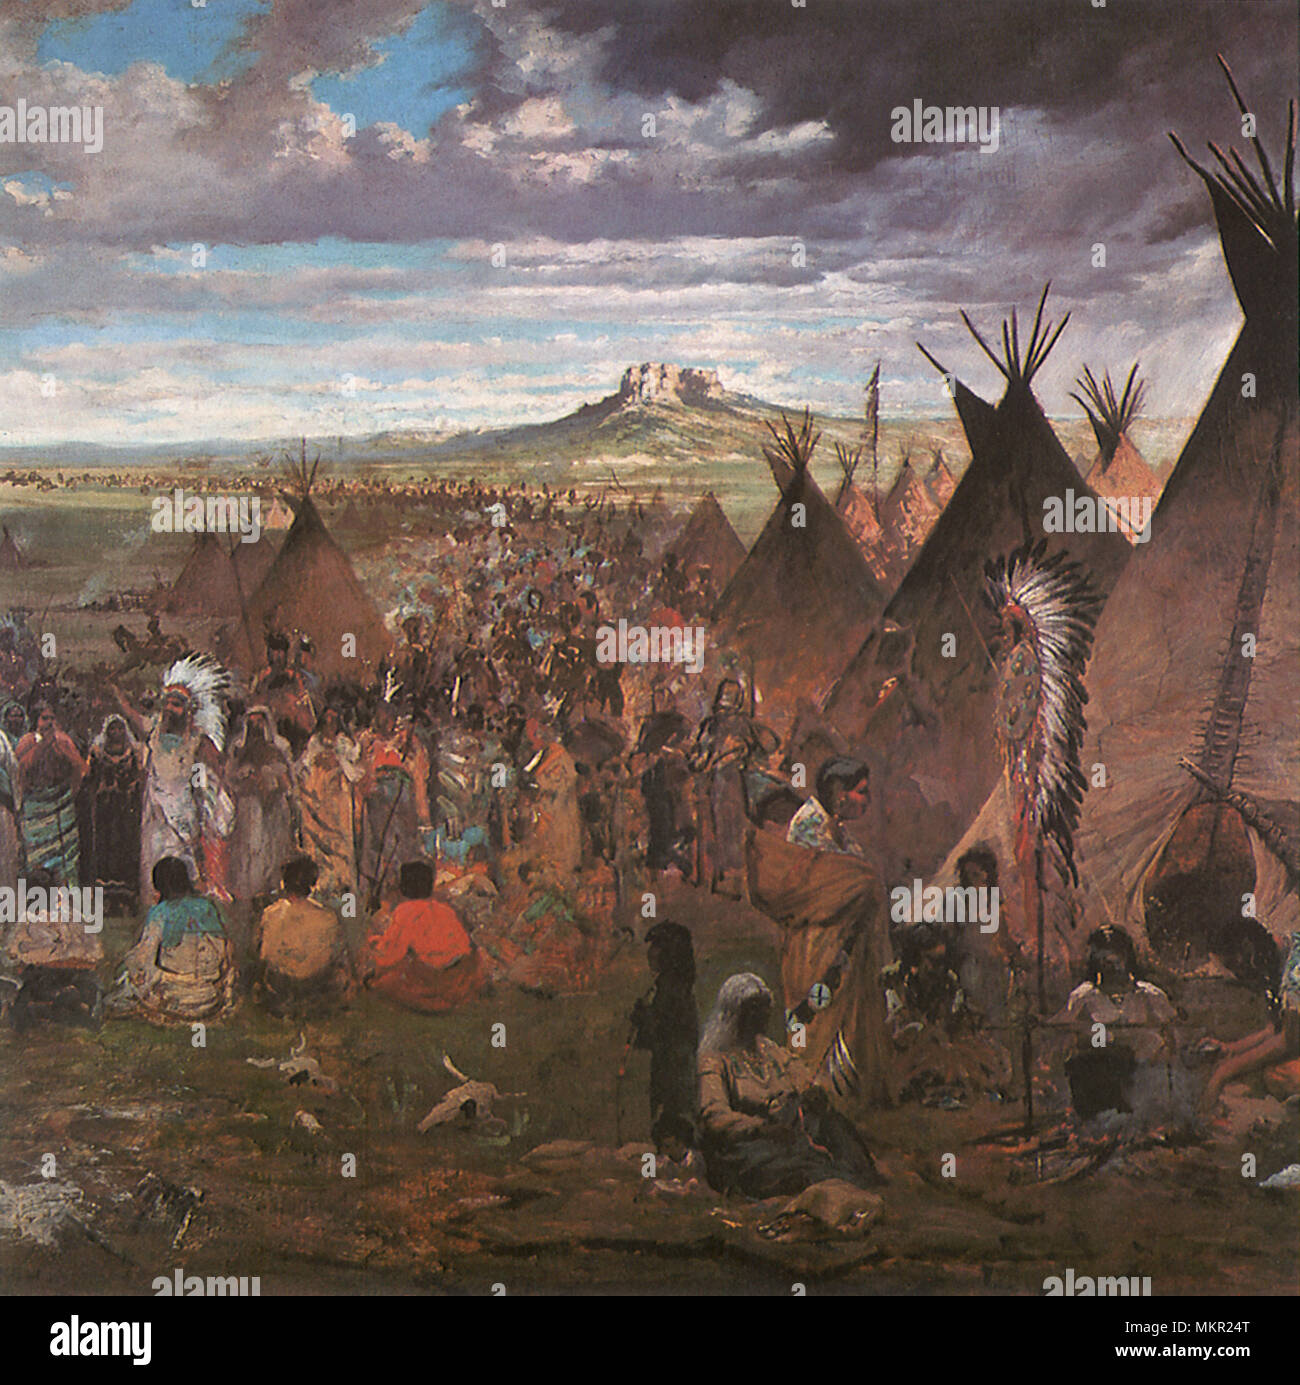 Sioux Indianerstamm Campground auf Ebenen Stockfoto